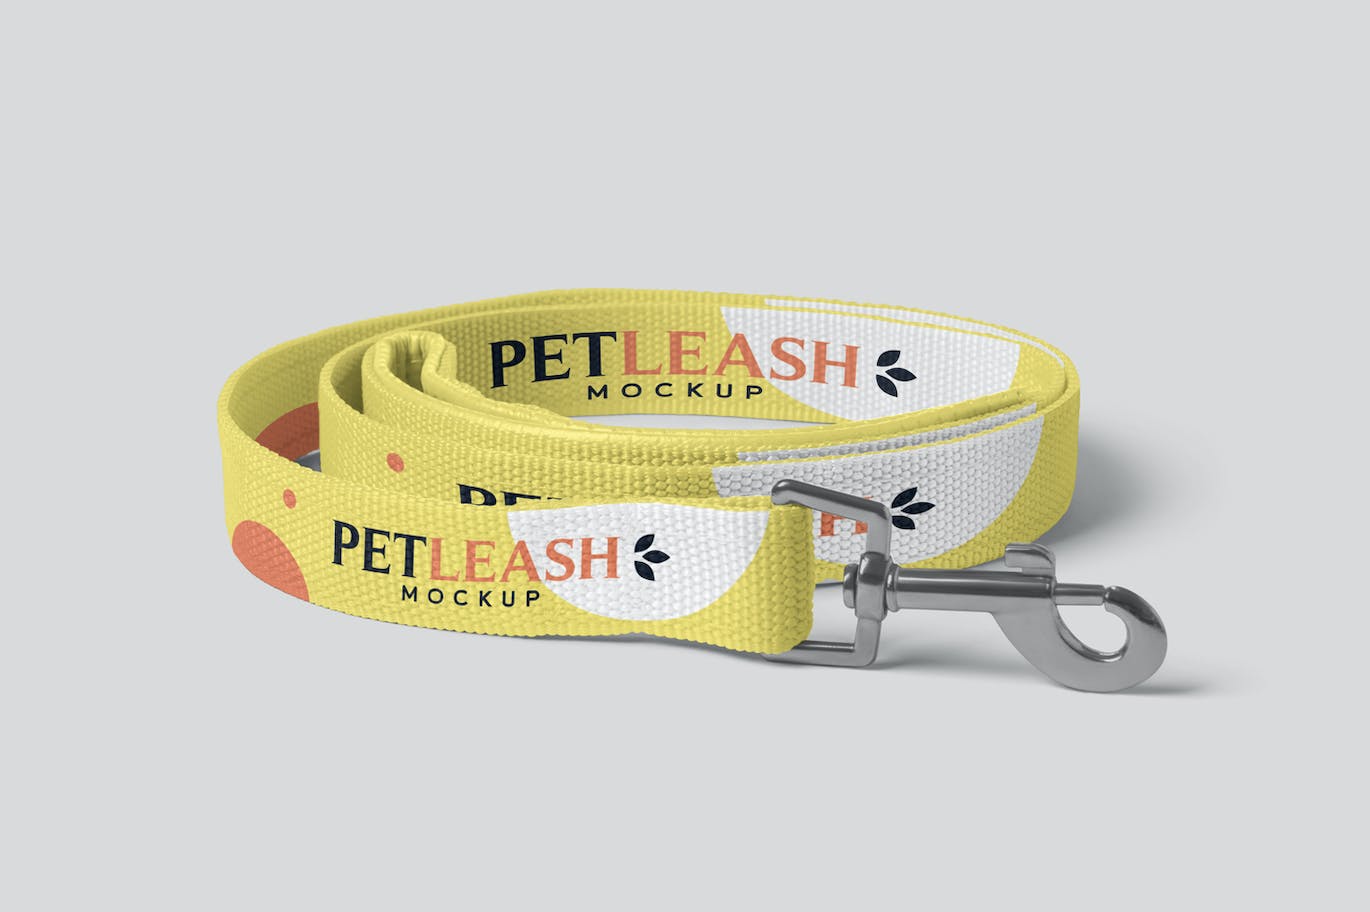 宠物皮带牵引绳设计样机 Pet Leash Mockups 样机素材 第6张